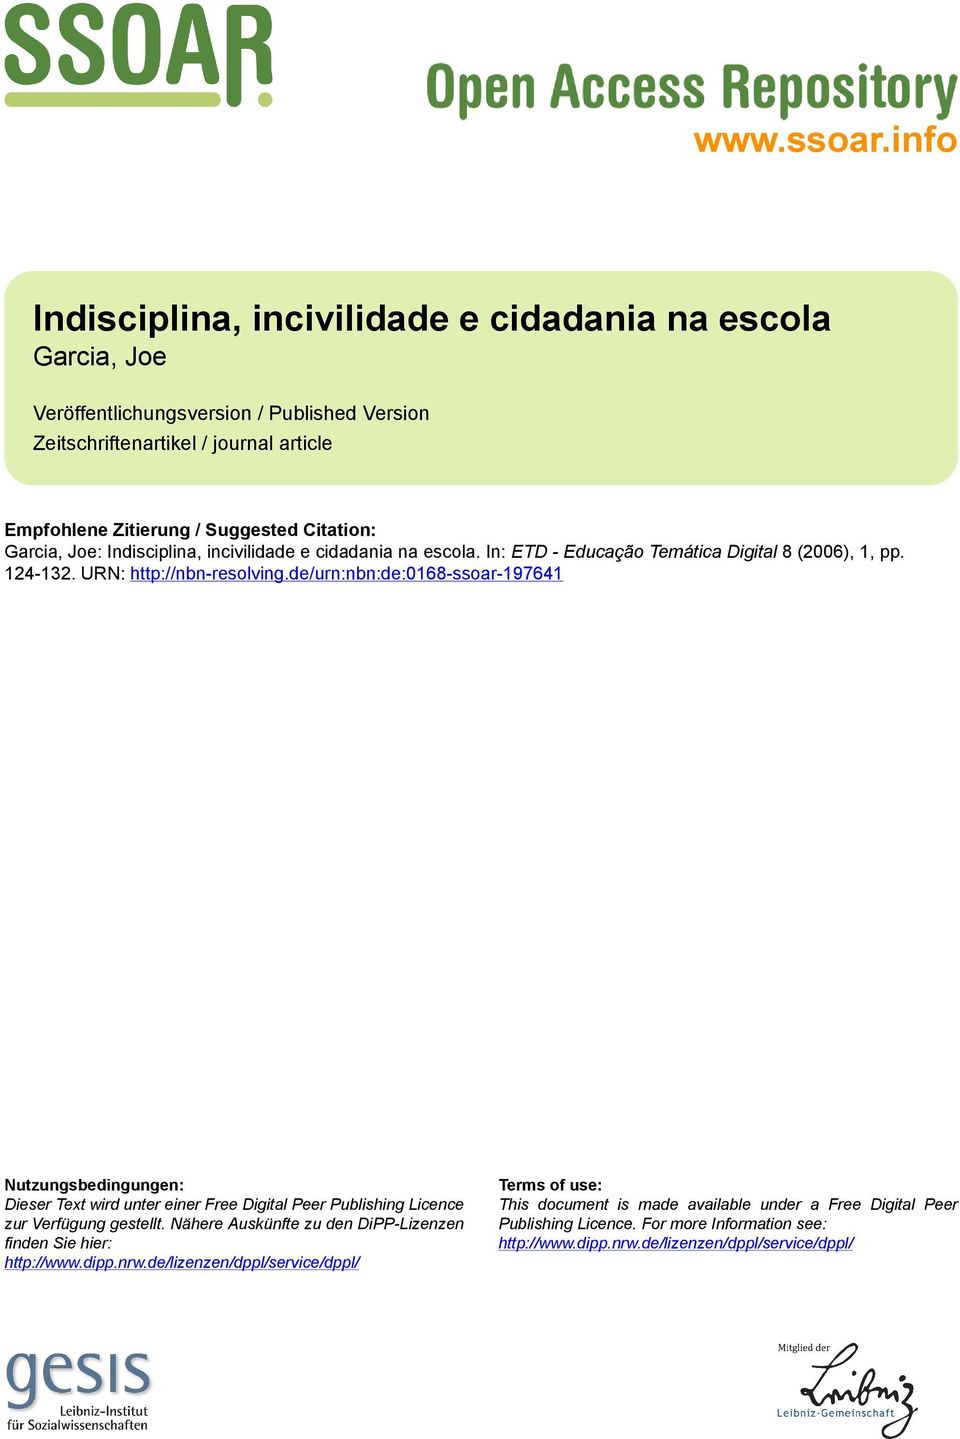 Garcia, Joe: Indisciplina, incivilidade e cidadania na escola. In: ETD - Educação Temática Digital 8 (2006), 1, pp. 124-132. URN: http://nbn-resolving.